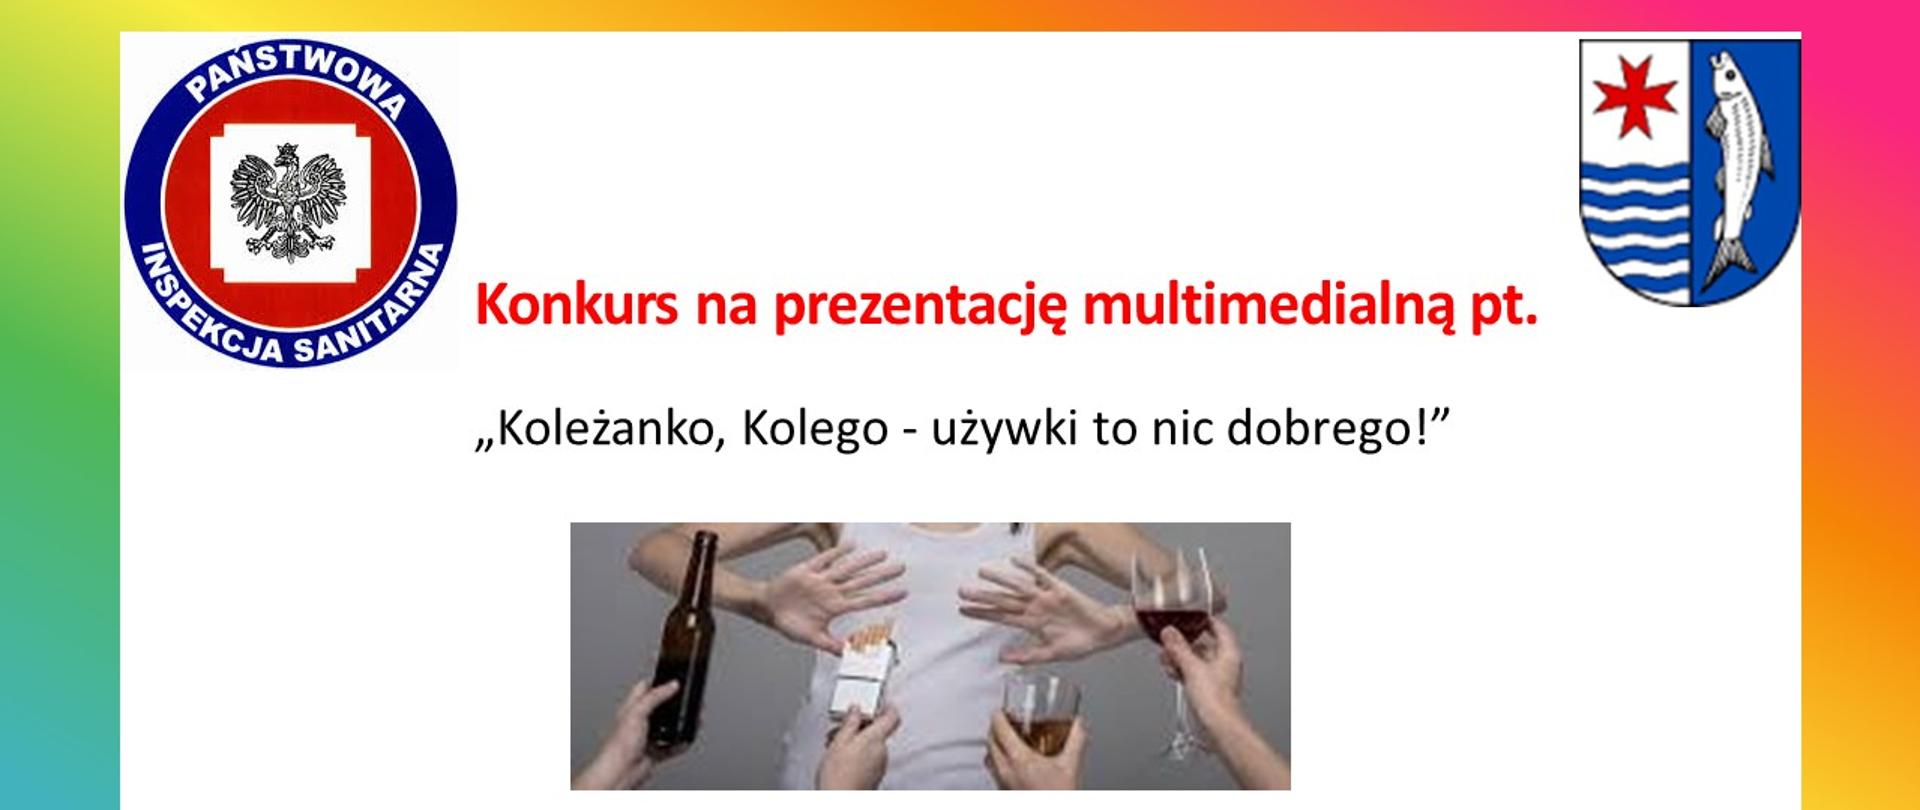 Konkurs Powiatowy na najlepszą prezentację multimedialną pt.” Koleżanko, kolego-używki to nic dobrego!”